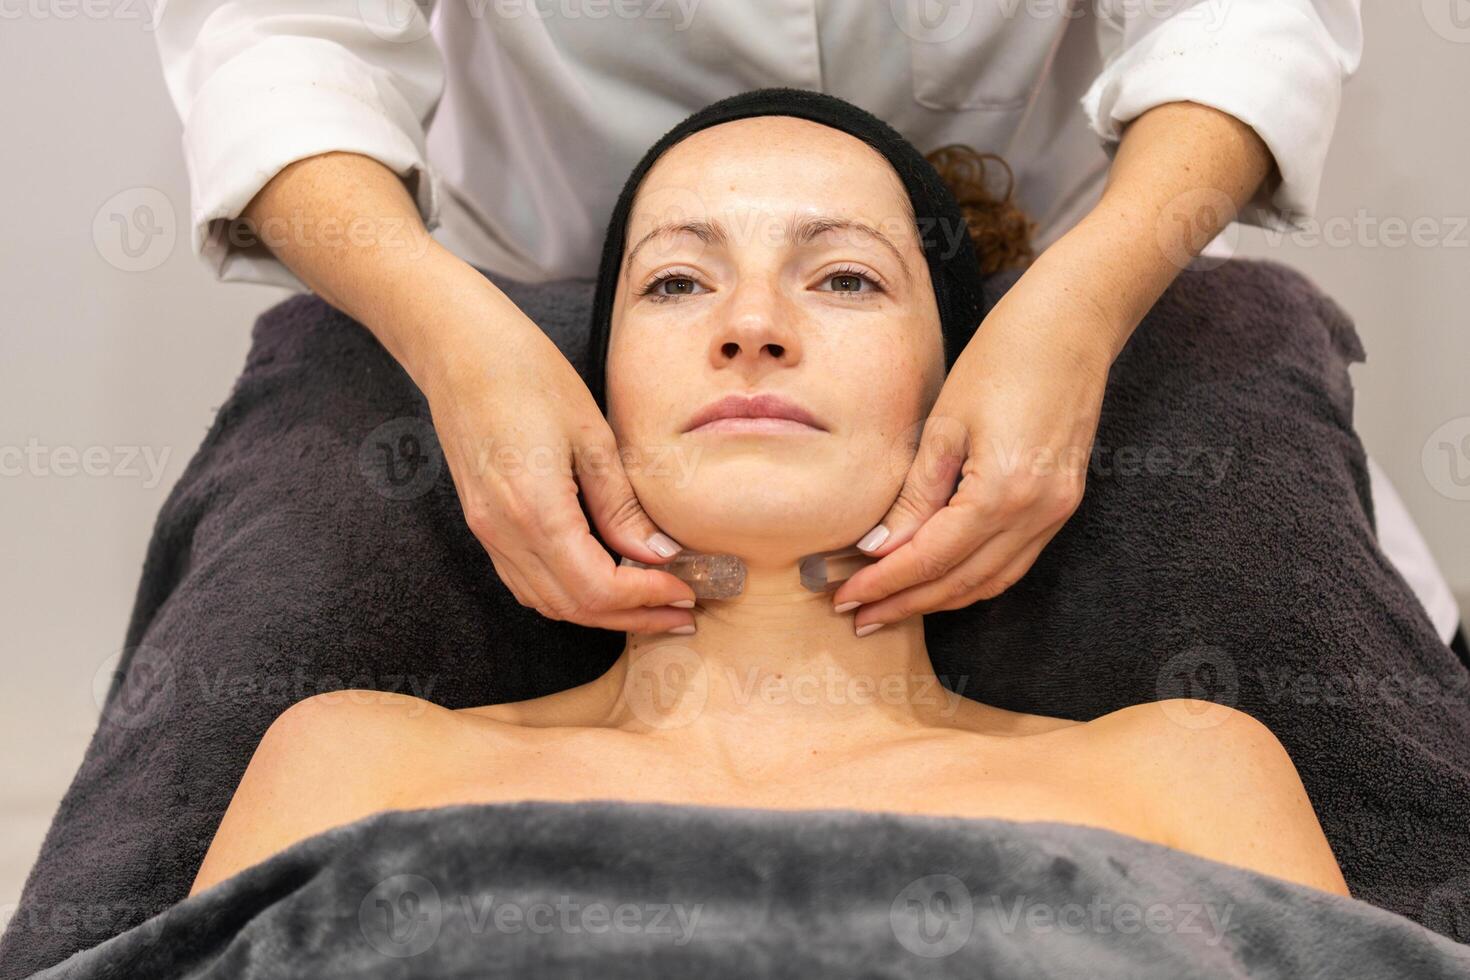 vrouw schoonheidsspecialist masseren nek van cliënt met stenen foto